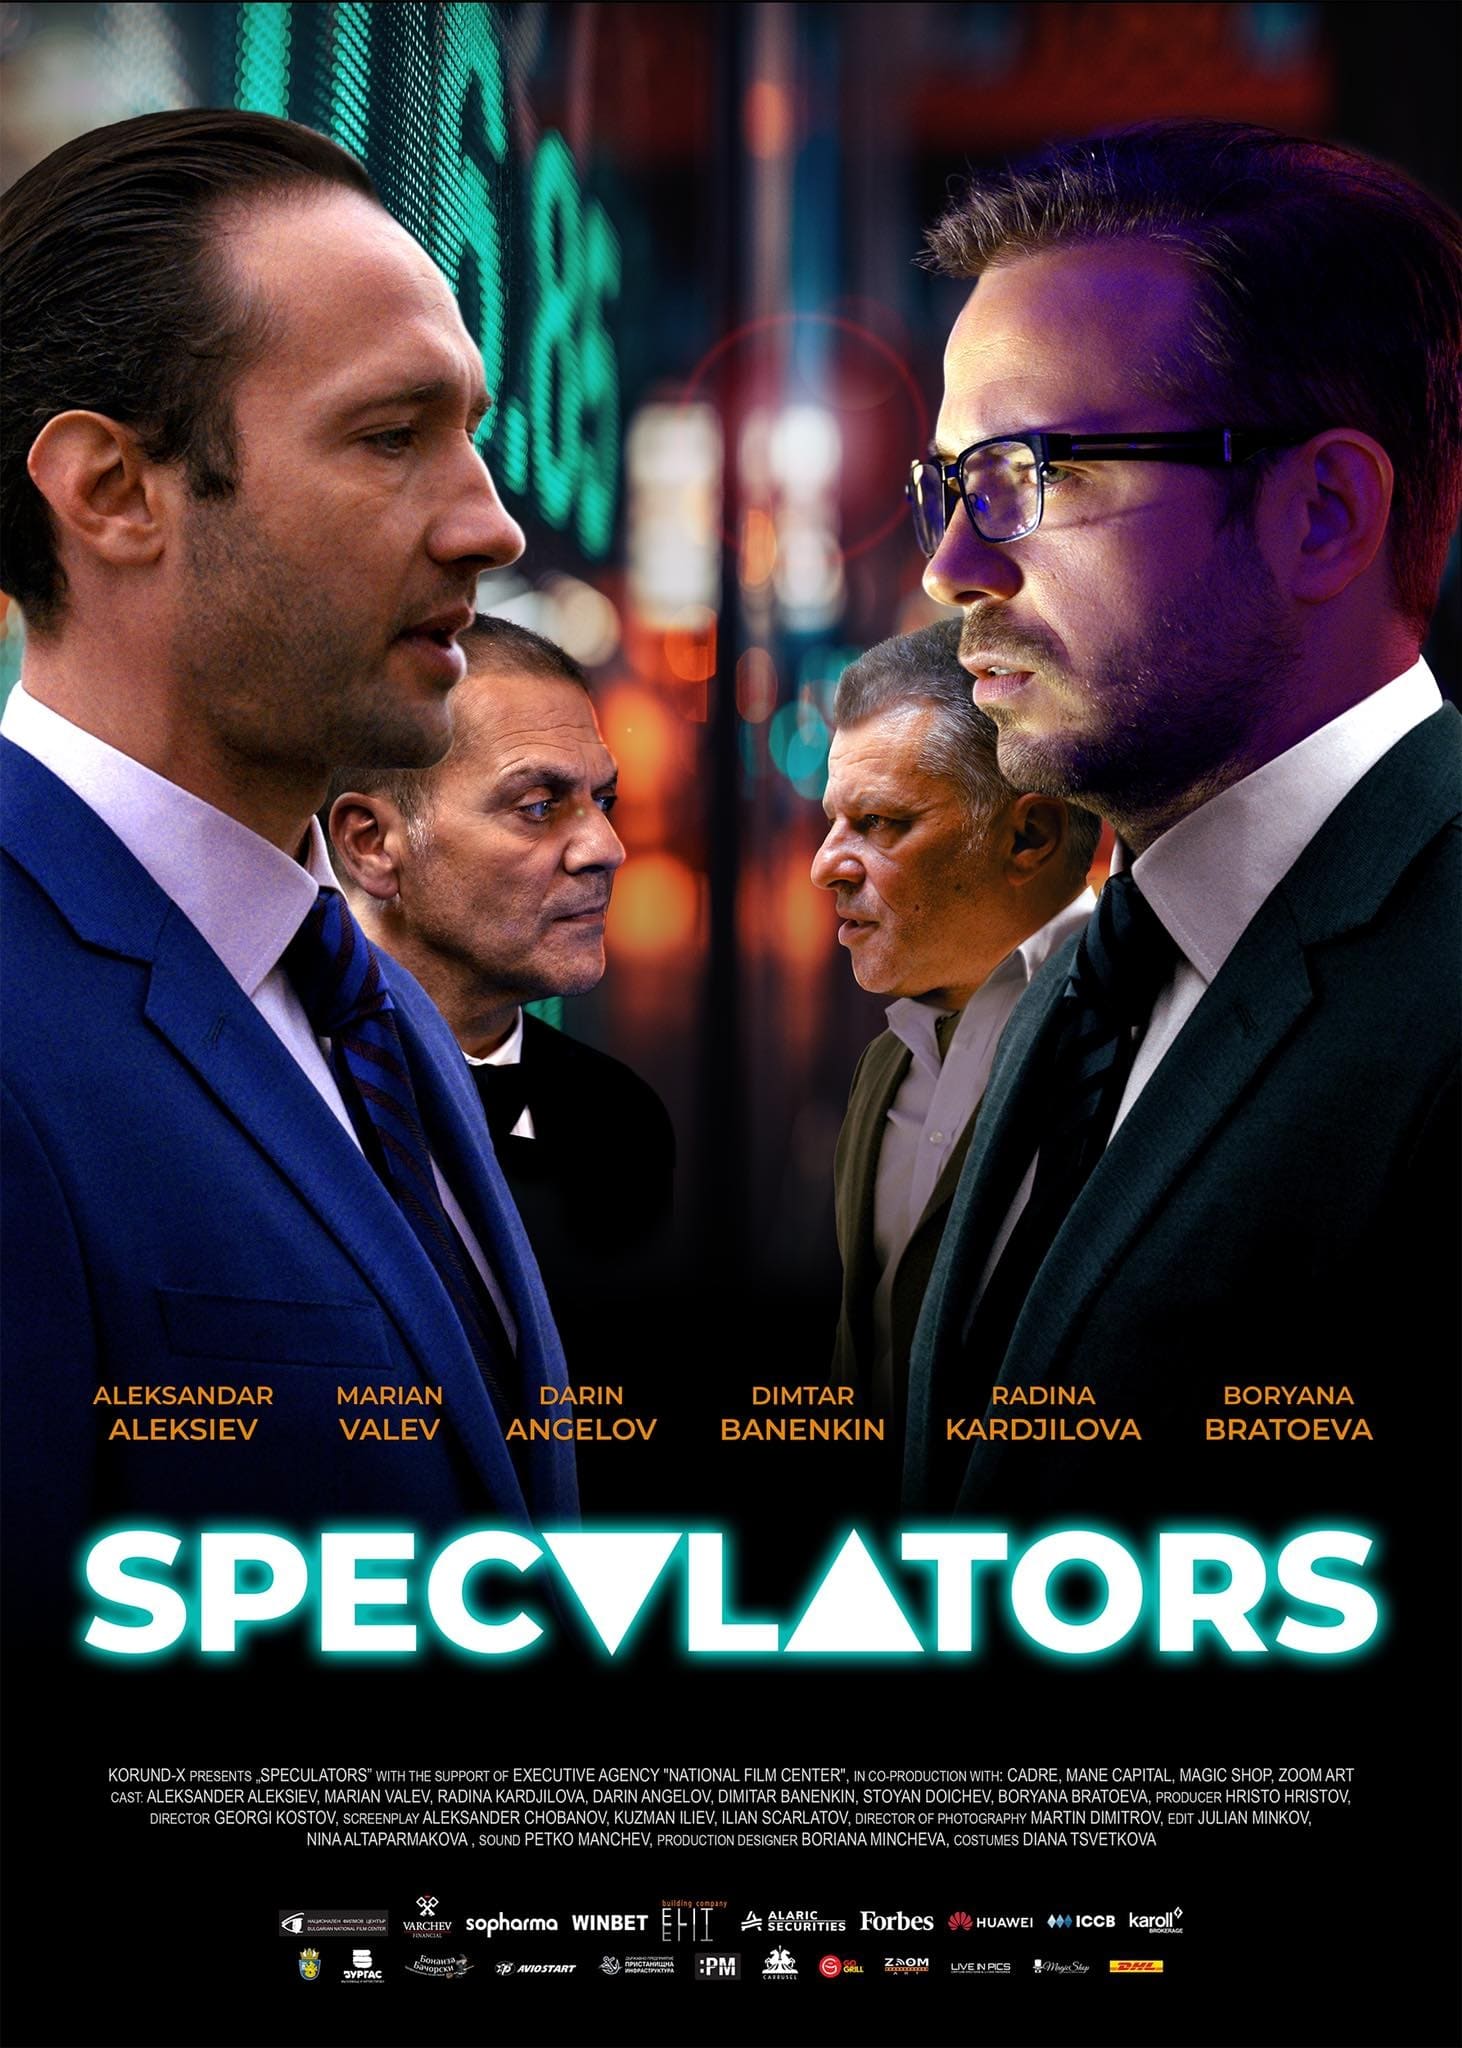 SpeculatorS